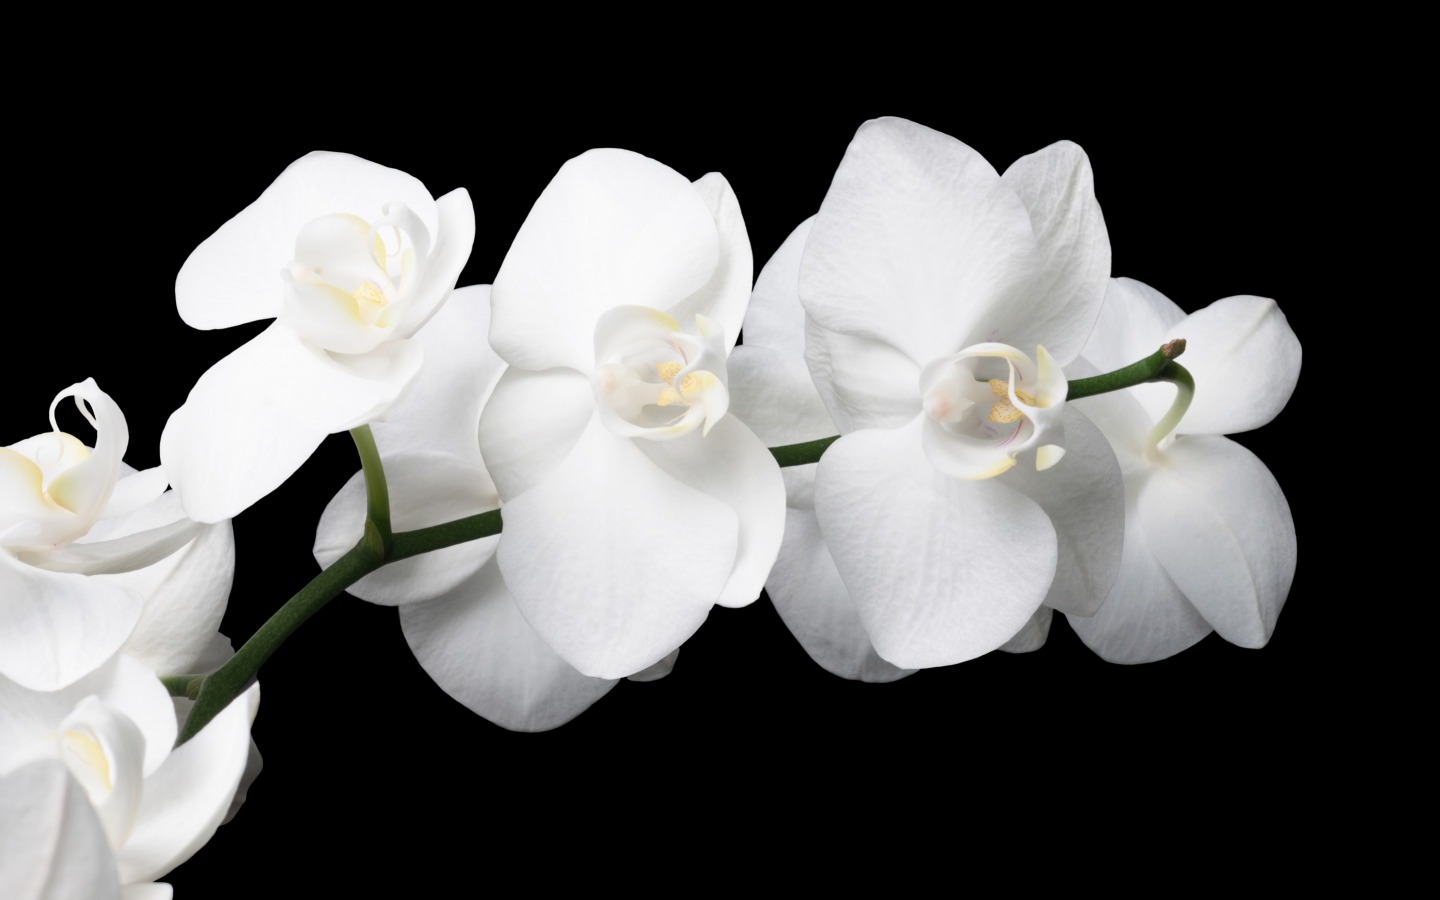 Orchid - Flowers Wallpaper (33698290) - Fanpop